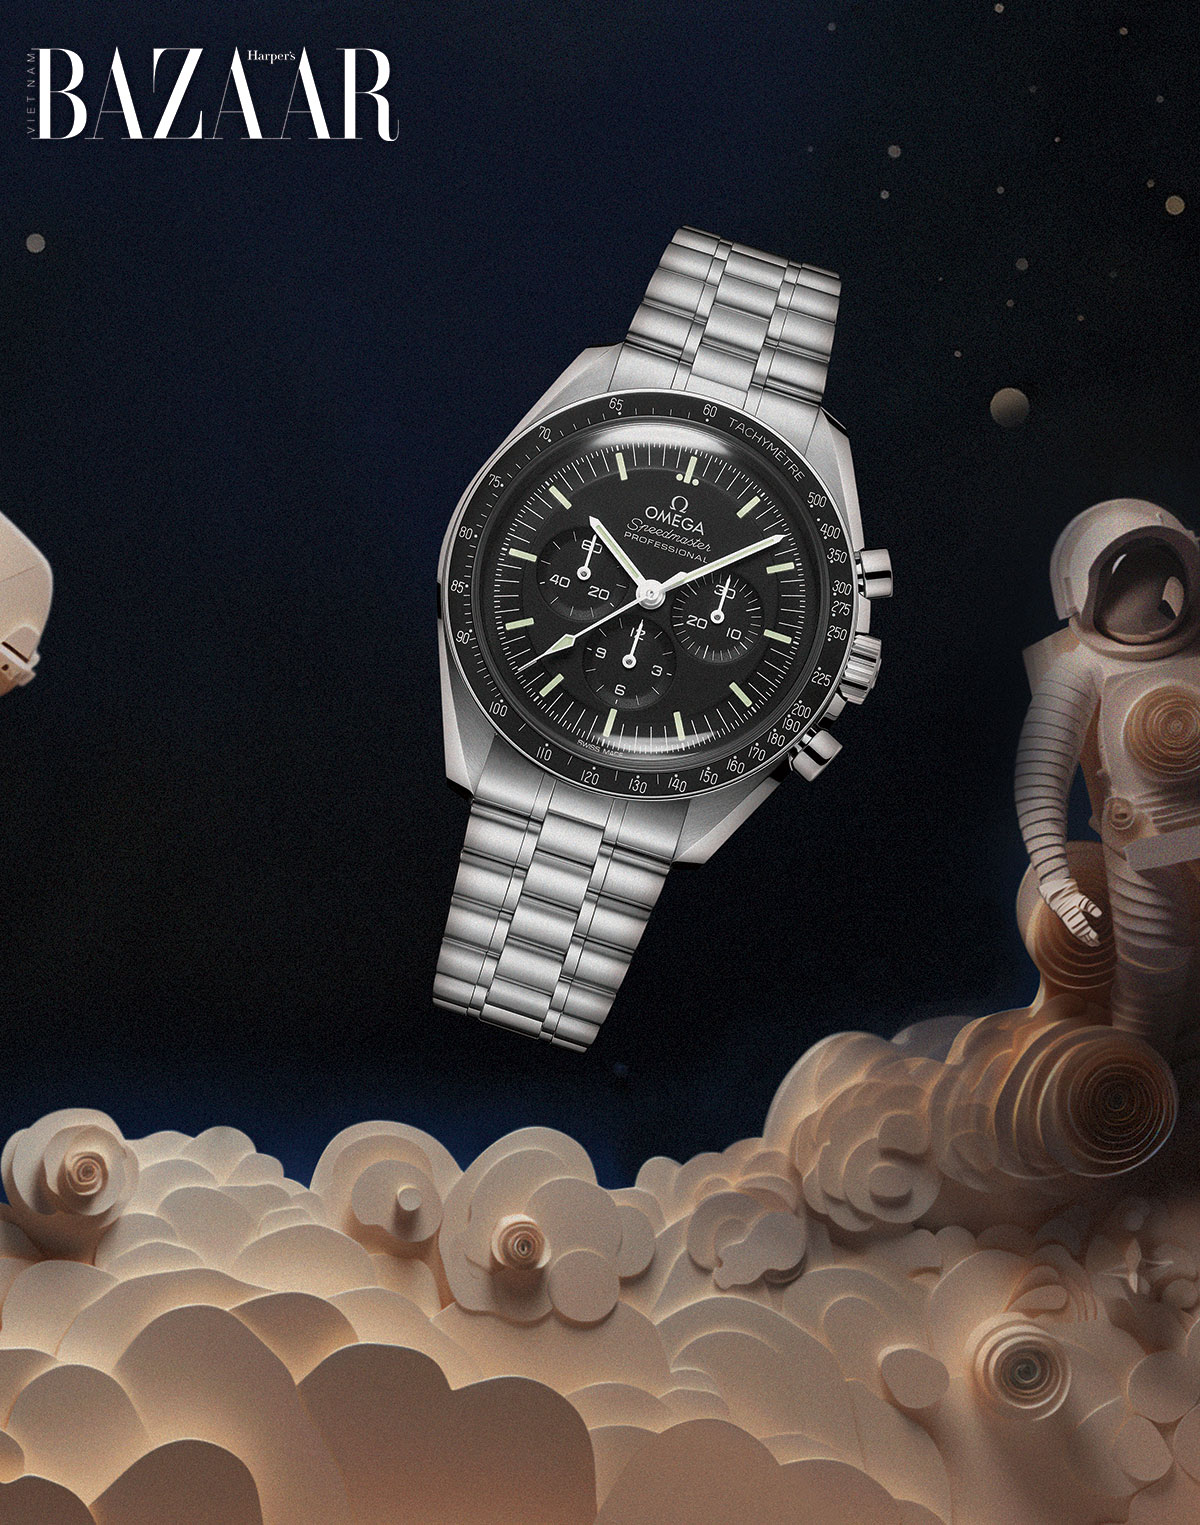 To the moon: Đồng hồ Omega và những sứ mệnh mặt trăng